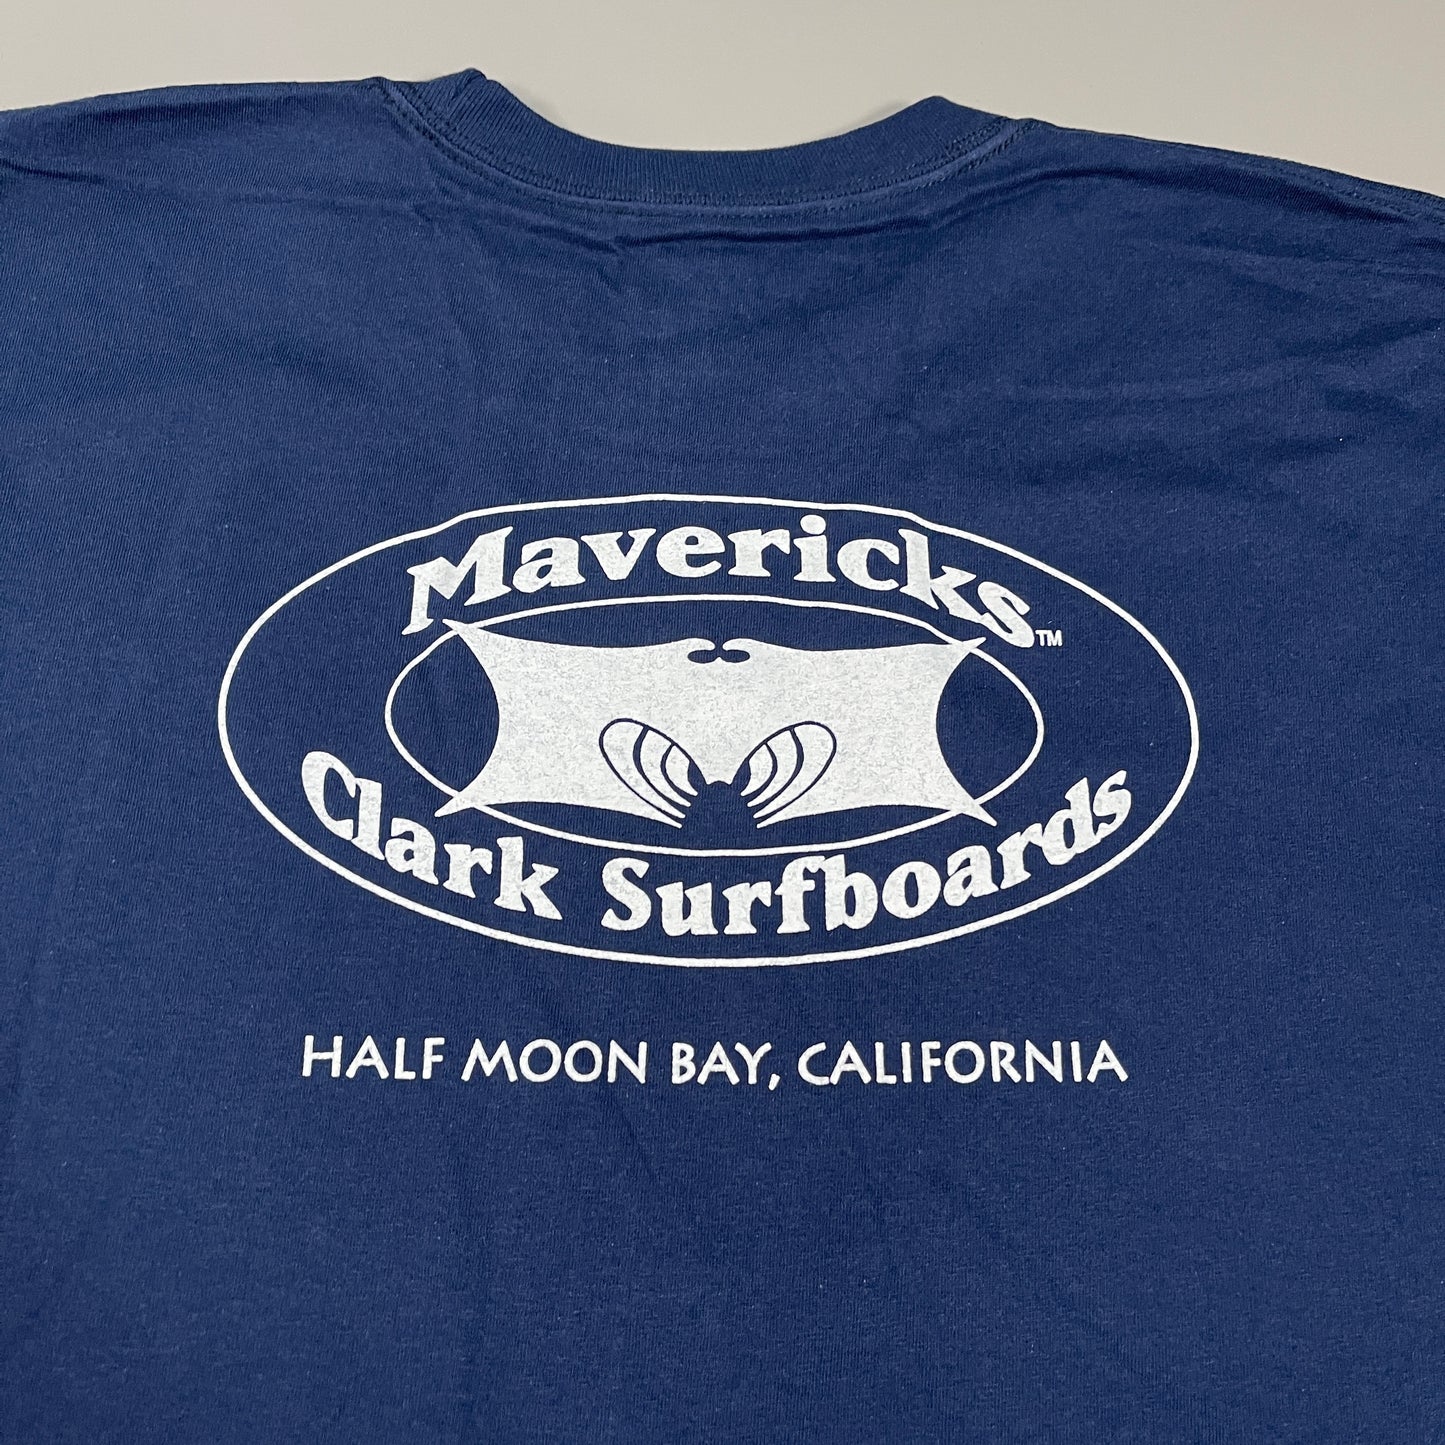 MAVERICKS CLARK SURFBOARDS T-Shirt Men's Sz 2XL Navy Blue Hanes Tagless (New)